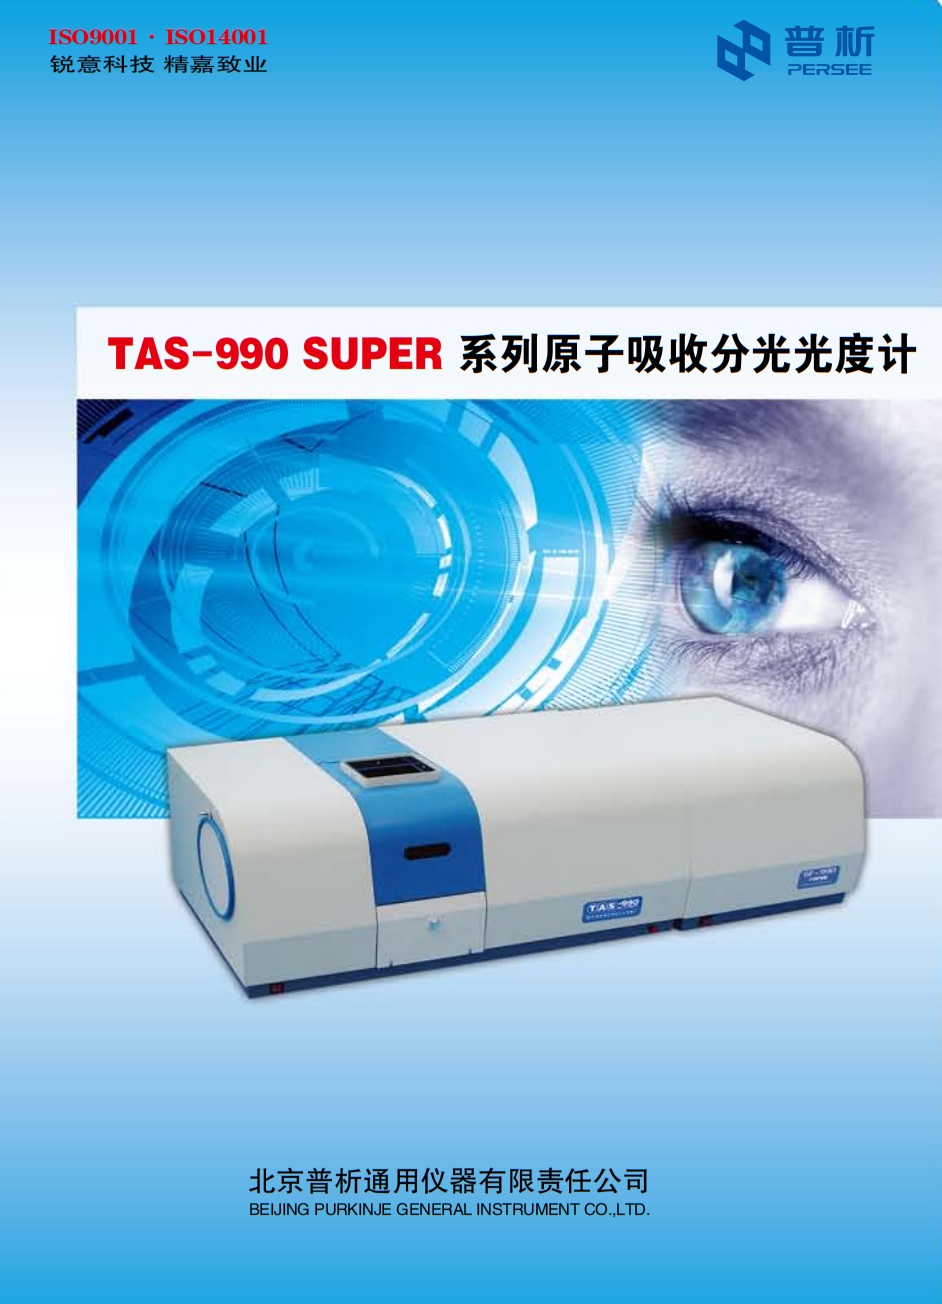 TAS-990 SUPER.jpg